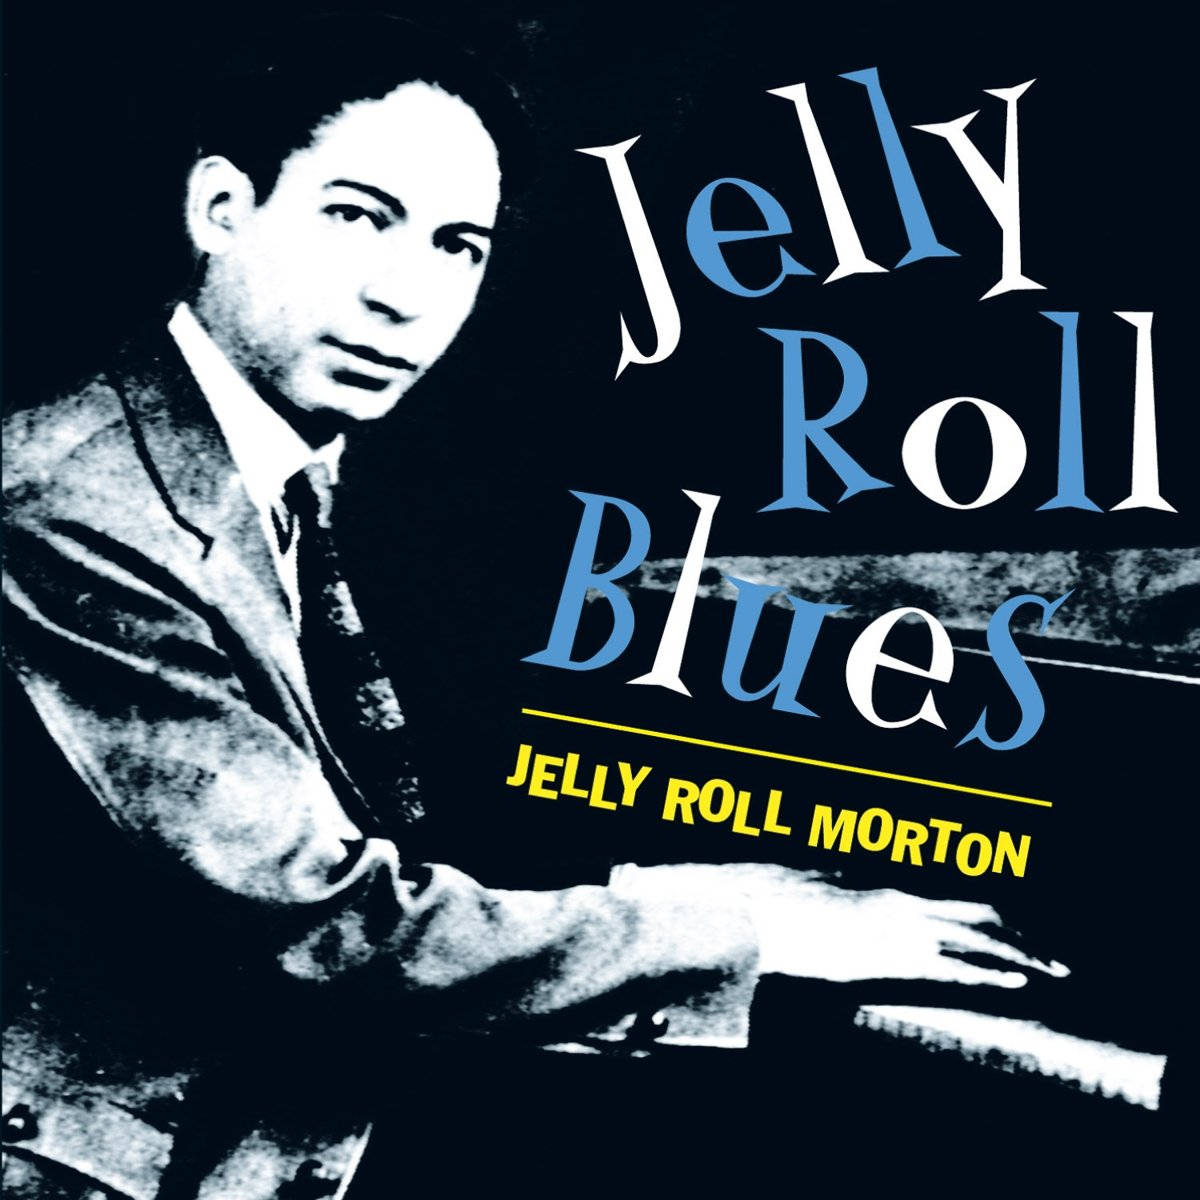 Jelly Roll Morton 1200 X 1200 Wallpaper